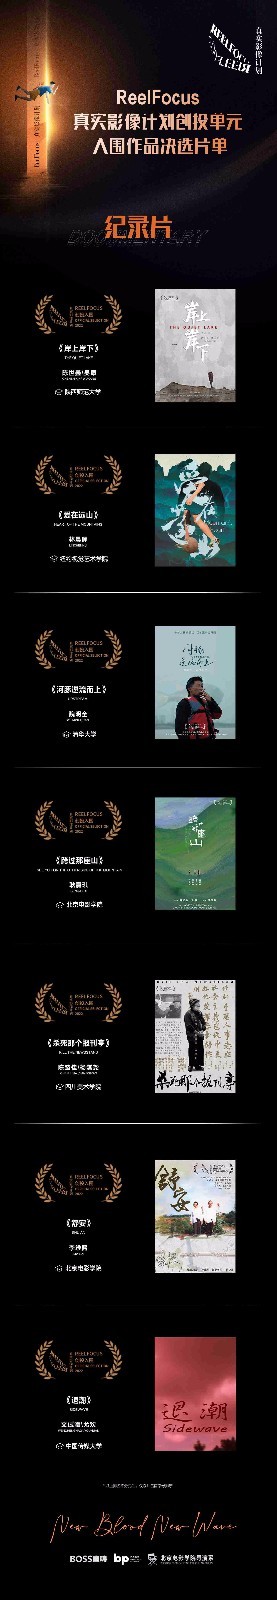 加盟北京国际电影节 携优秀学生导演作品八月首秀展映